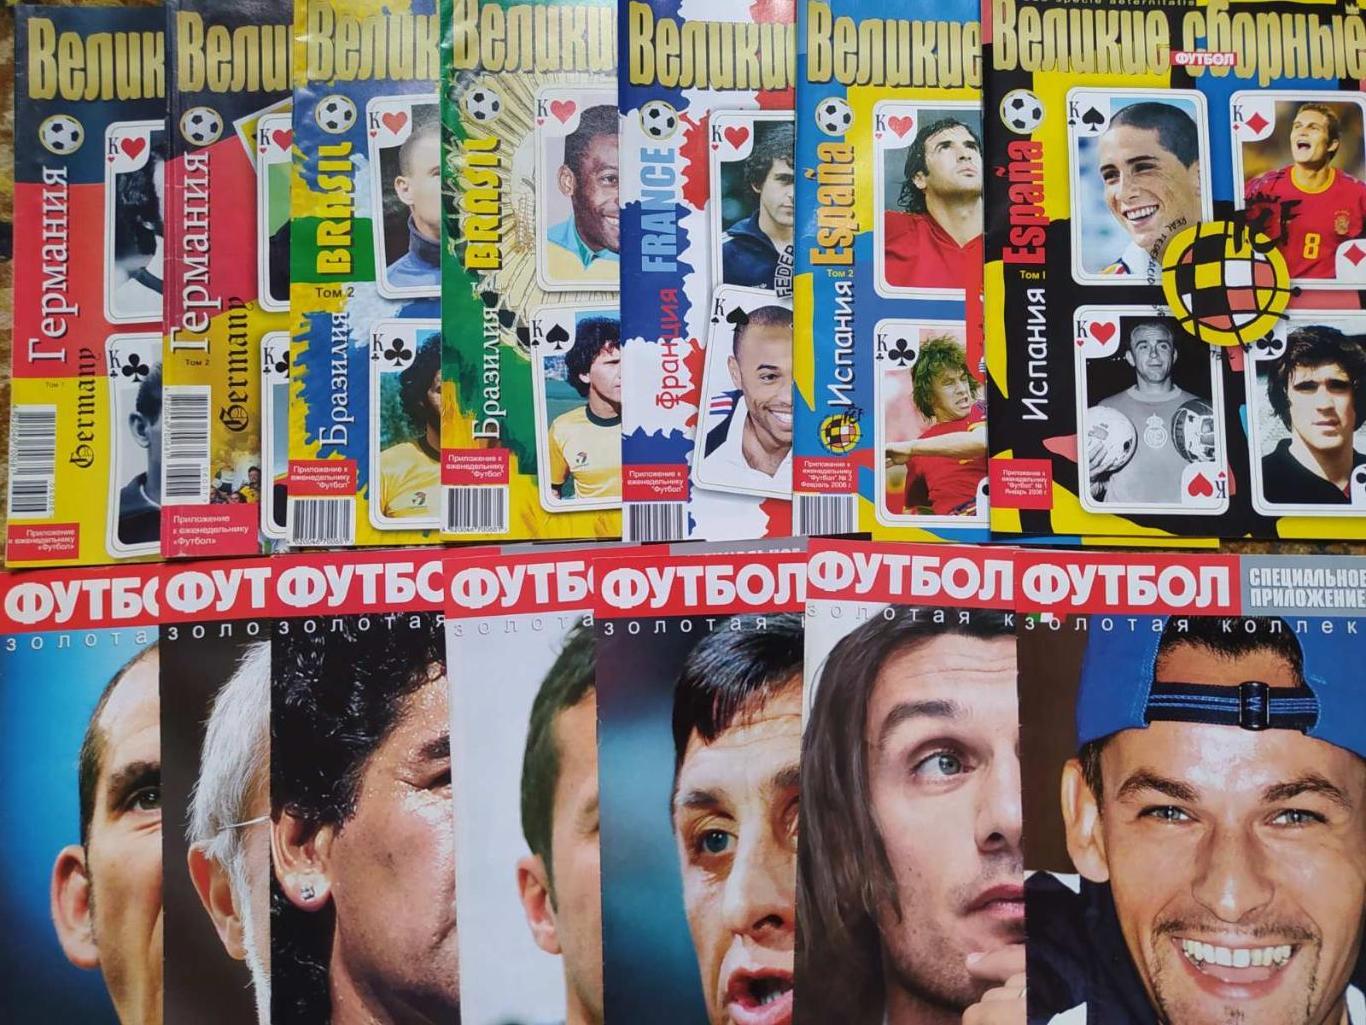 Приложение журнал Футбол Украина - Великие сборные,клубы,игроки - полная версия 3